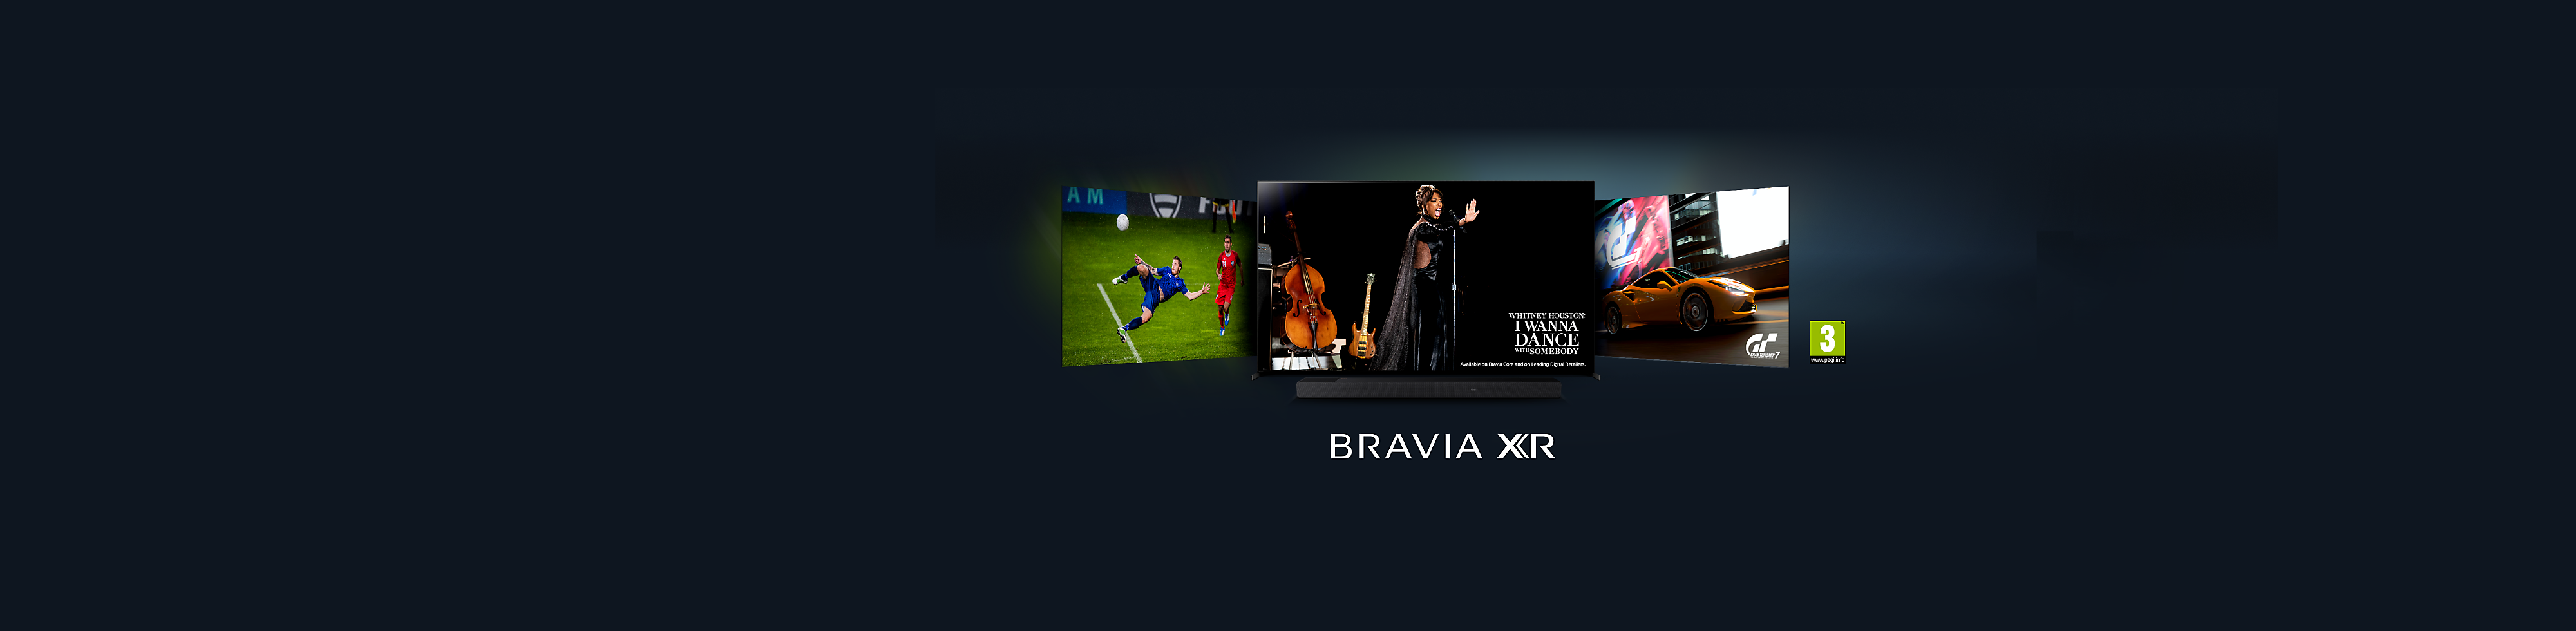 Nouveaux téléviseurs BRAVIA XR